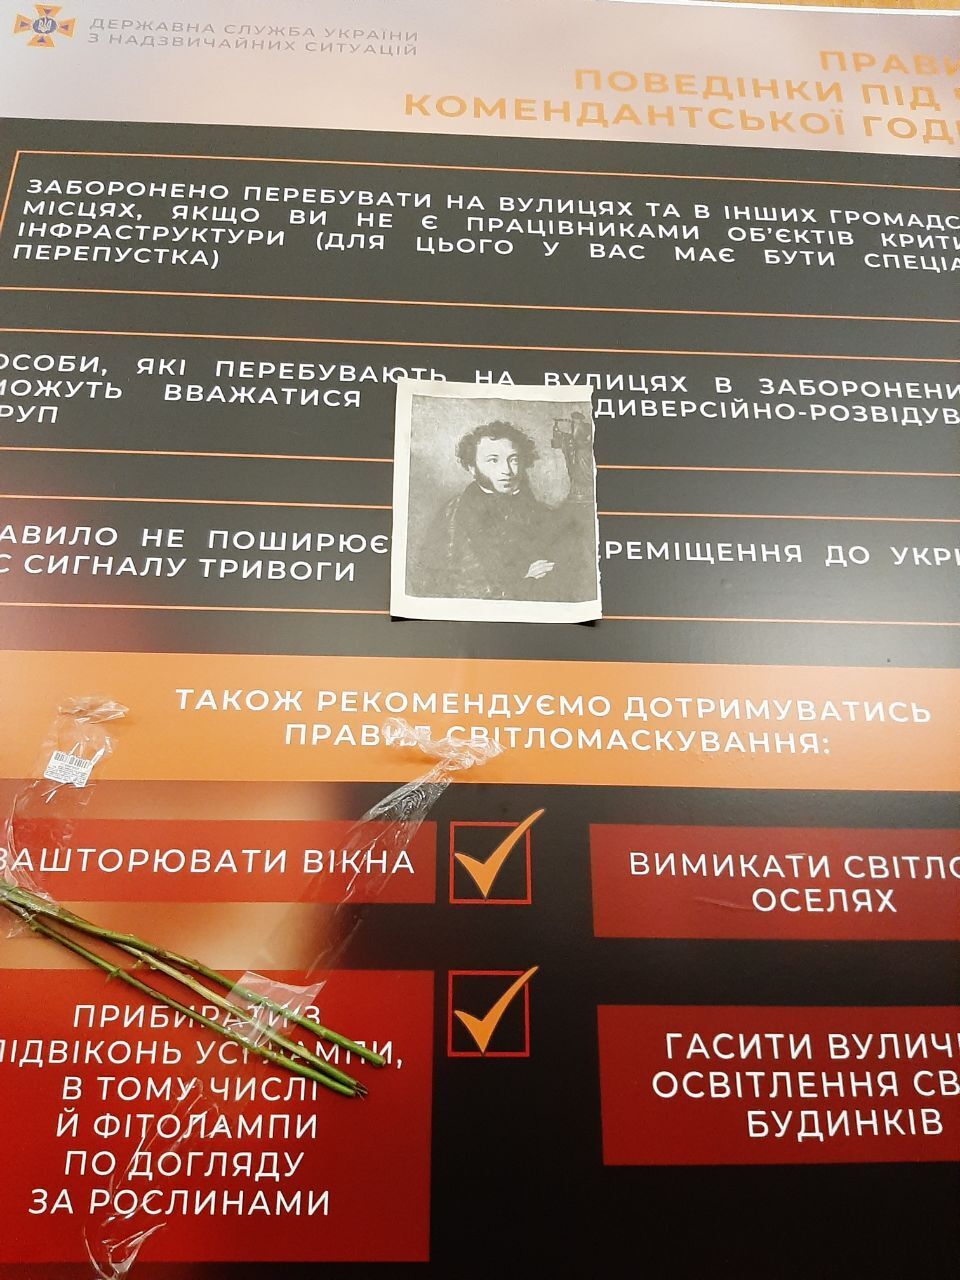 В Киеве на станцию метро "Университет" принесли изображение Пушкина и цветы на место, к которому стоял его бюст. Эксклюзивные фото